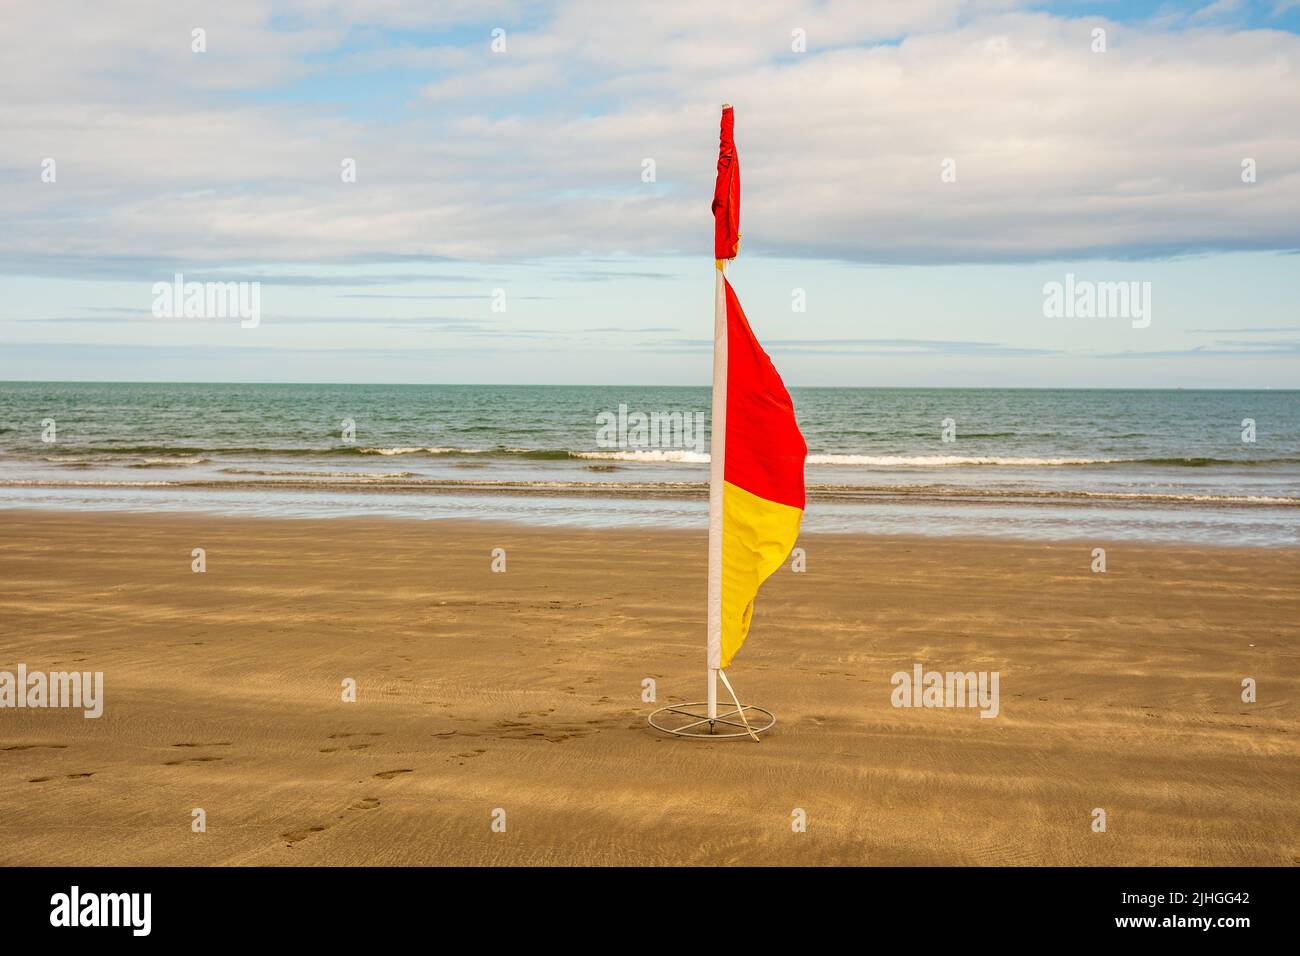 drapeau rouge et jaune isolé sur une plage Banque D'Images